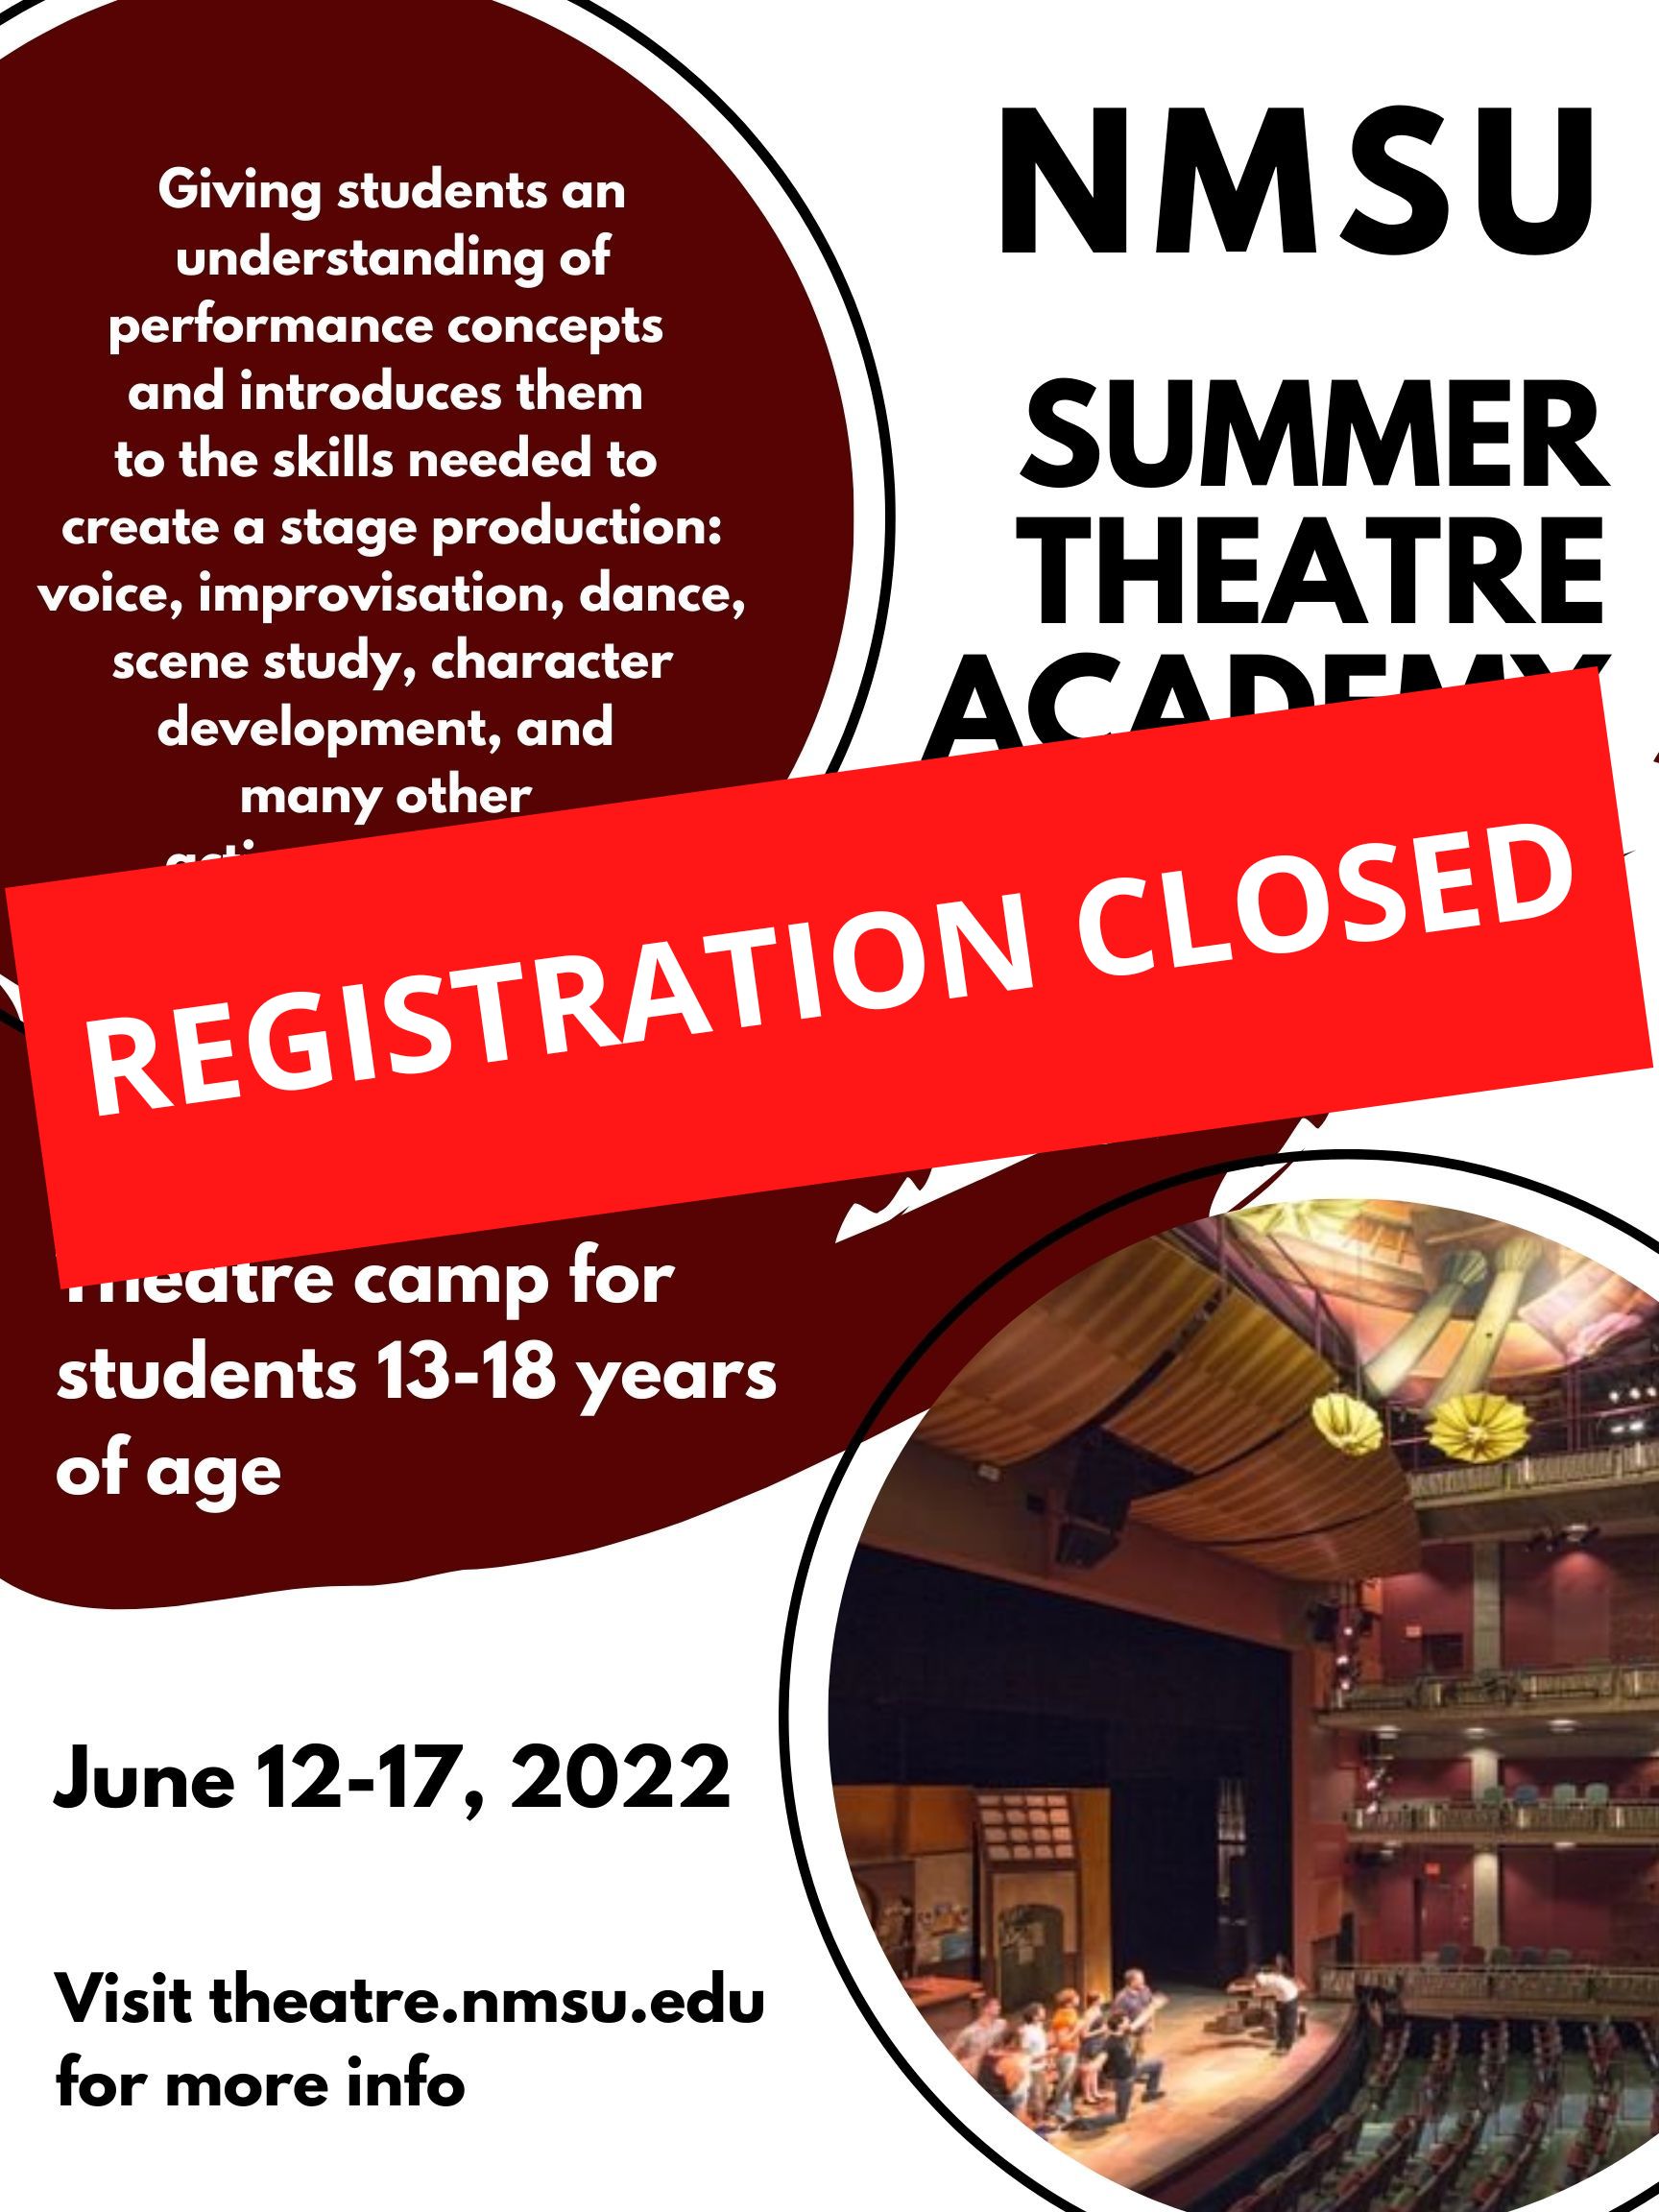 NMSU-Summer-Theatre-Academy.jpg